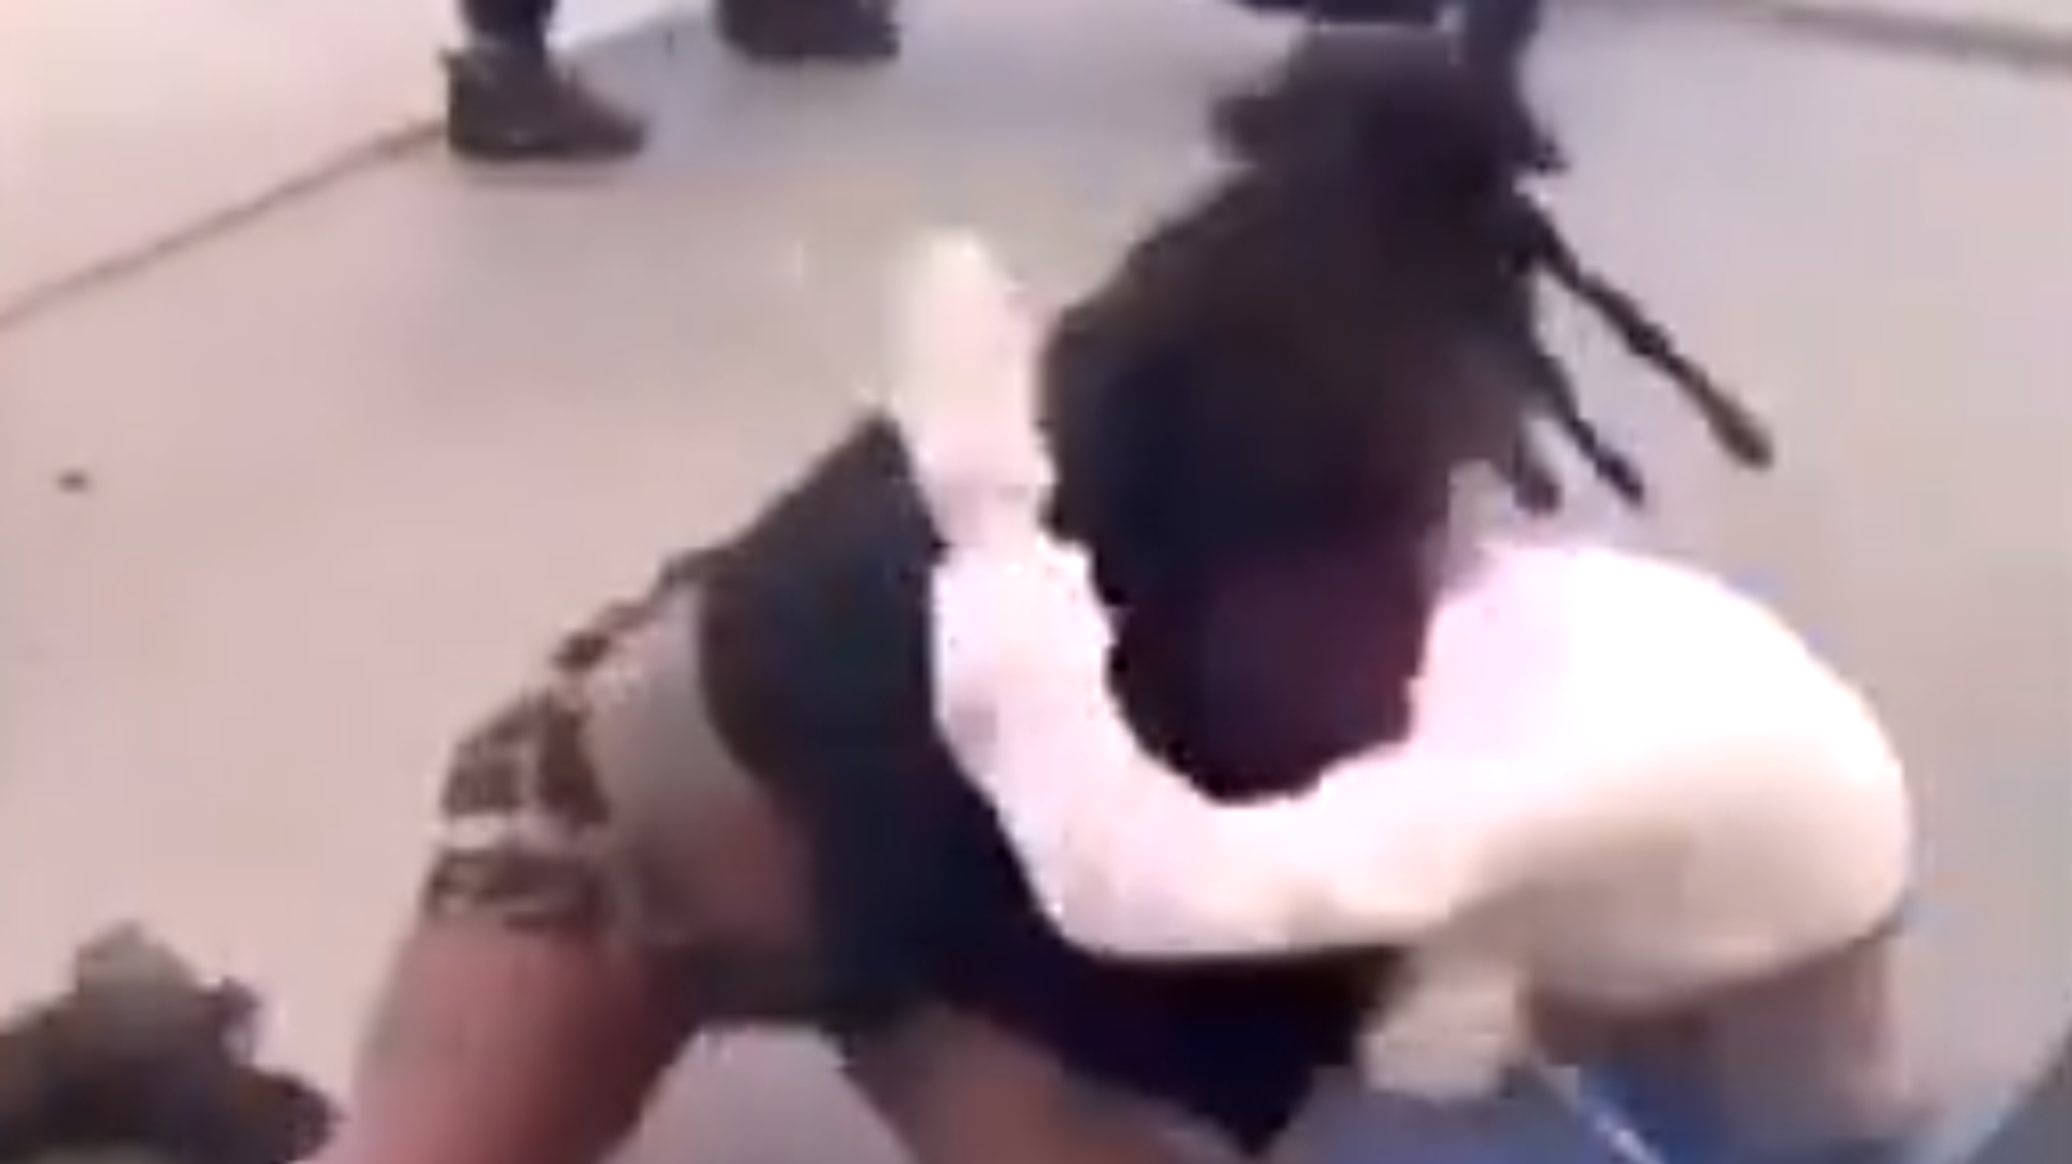 مشاهد قاسية جدا لطالبة أمريكية تضرب زميلتها بطريقة "وحشية"... فيديو